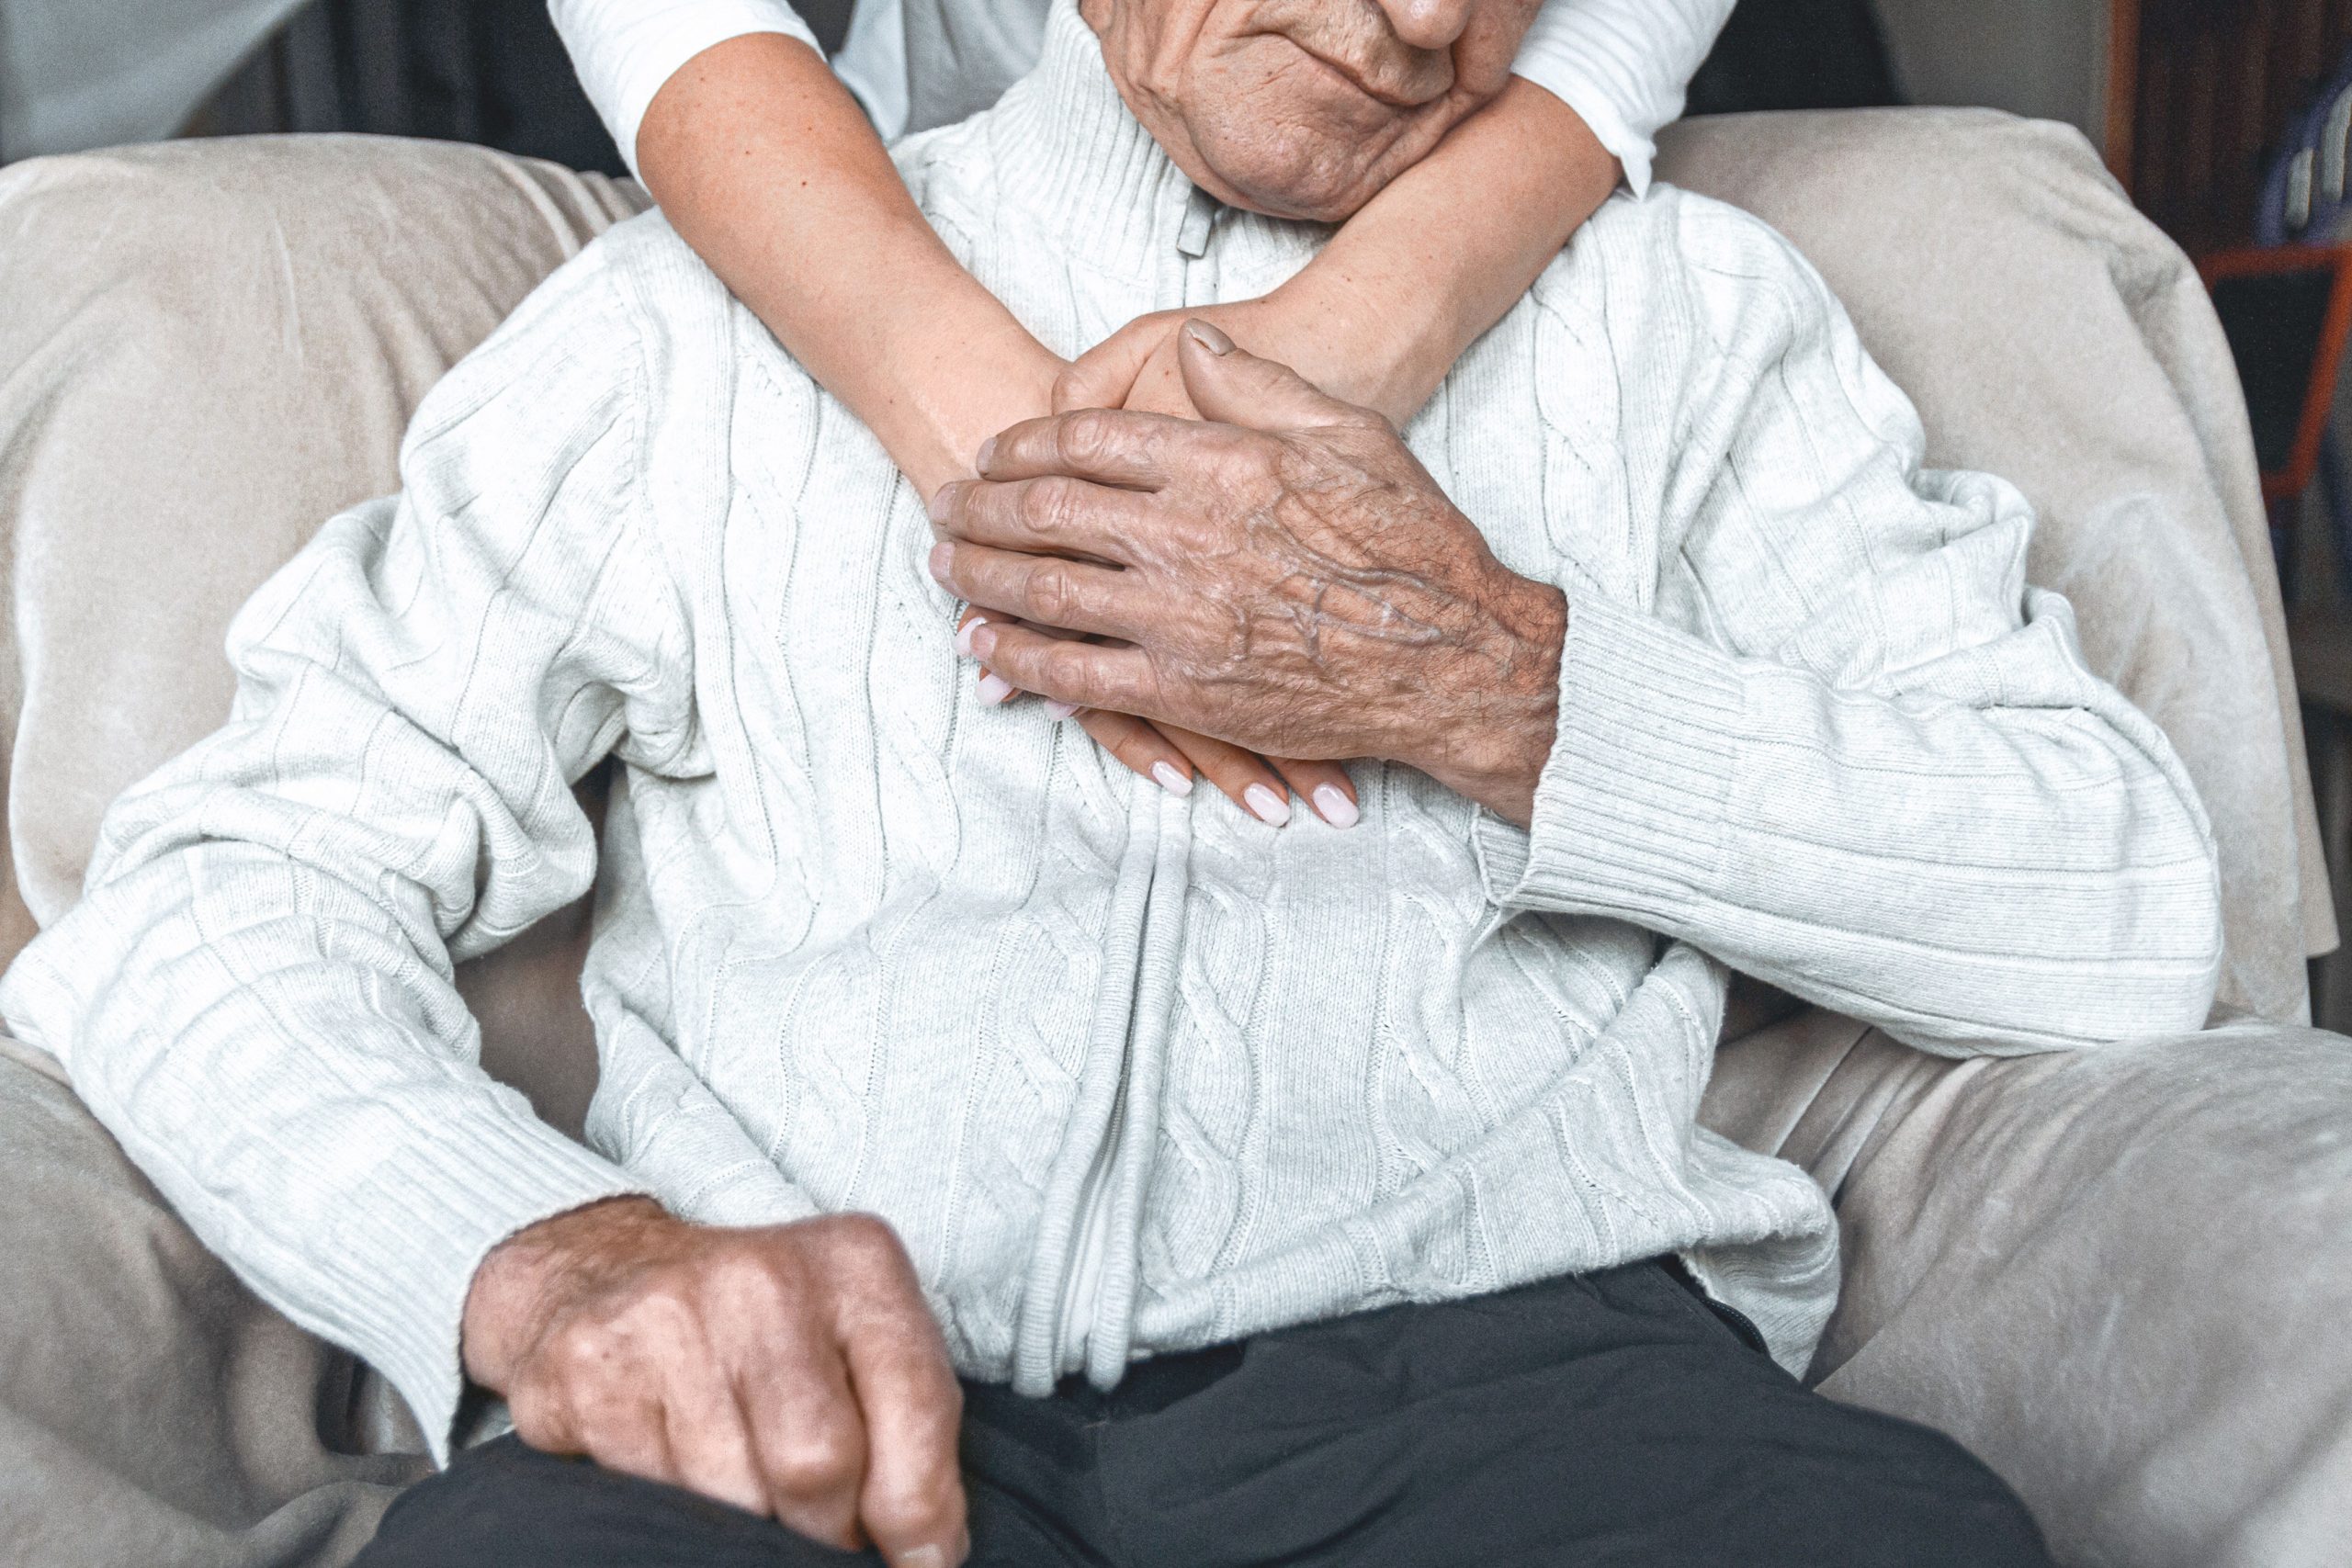 Elder care image Respect Your Elders. Senior Citizens Matter!